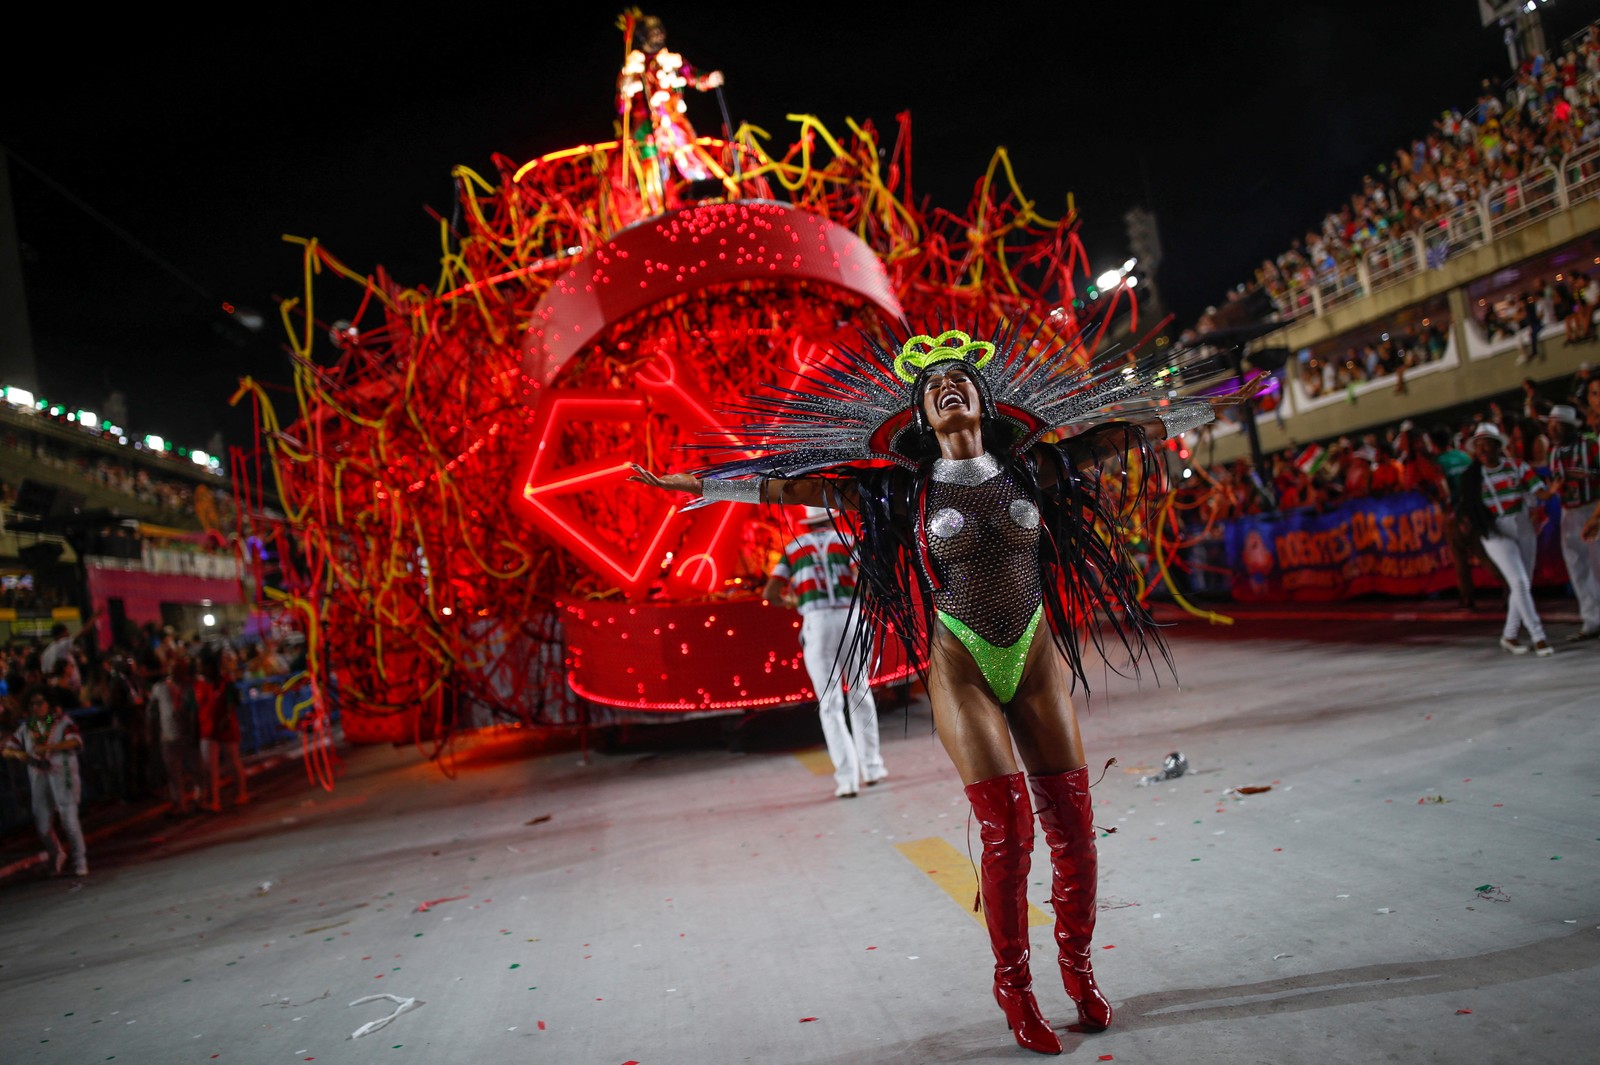 Brazil mocks god during festival